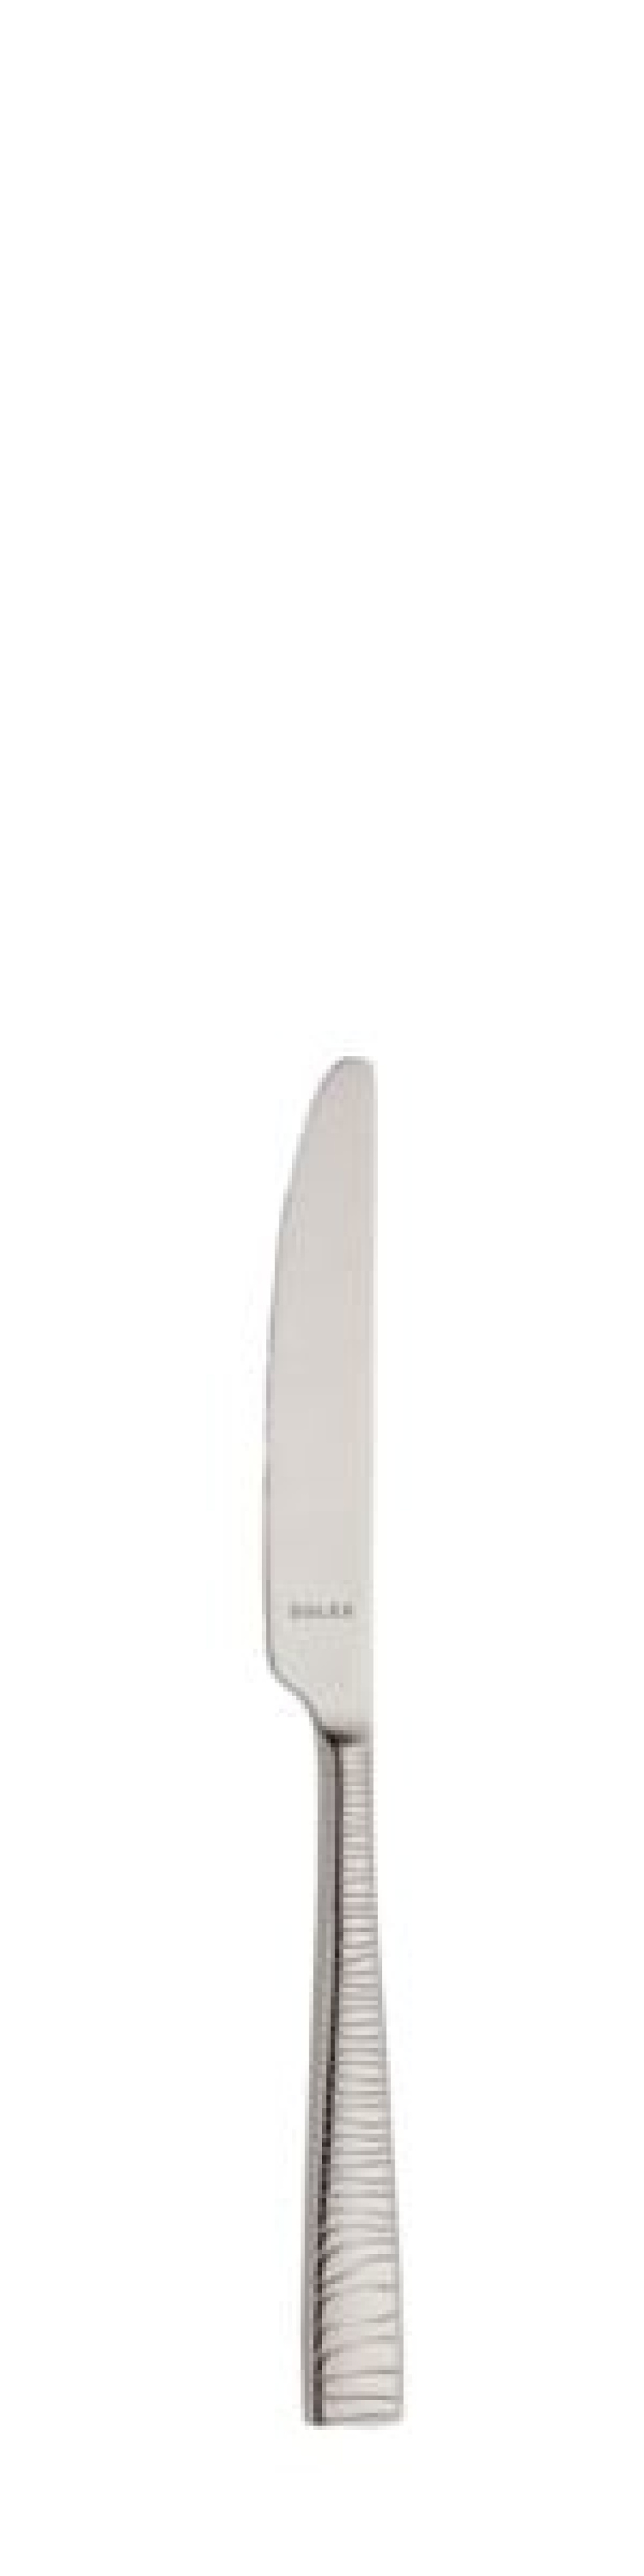 Alexa Smörkniv 170 mm - Solex i gruppen Dukning / Bestick / Smörknivar hos The Kitchen Lab (1284-21677)